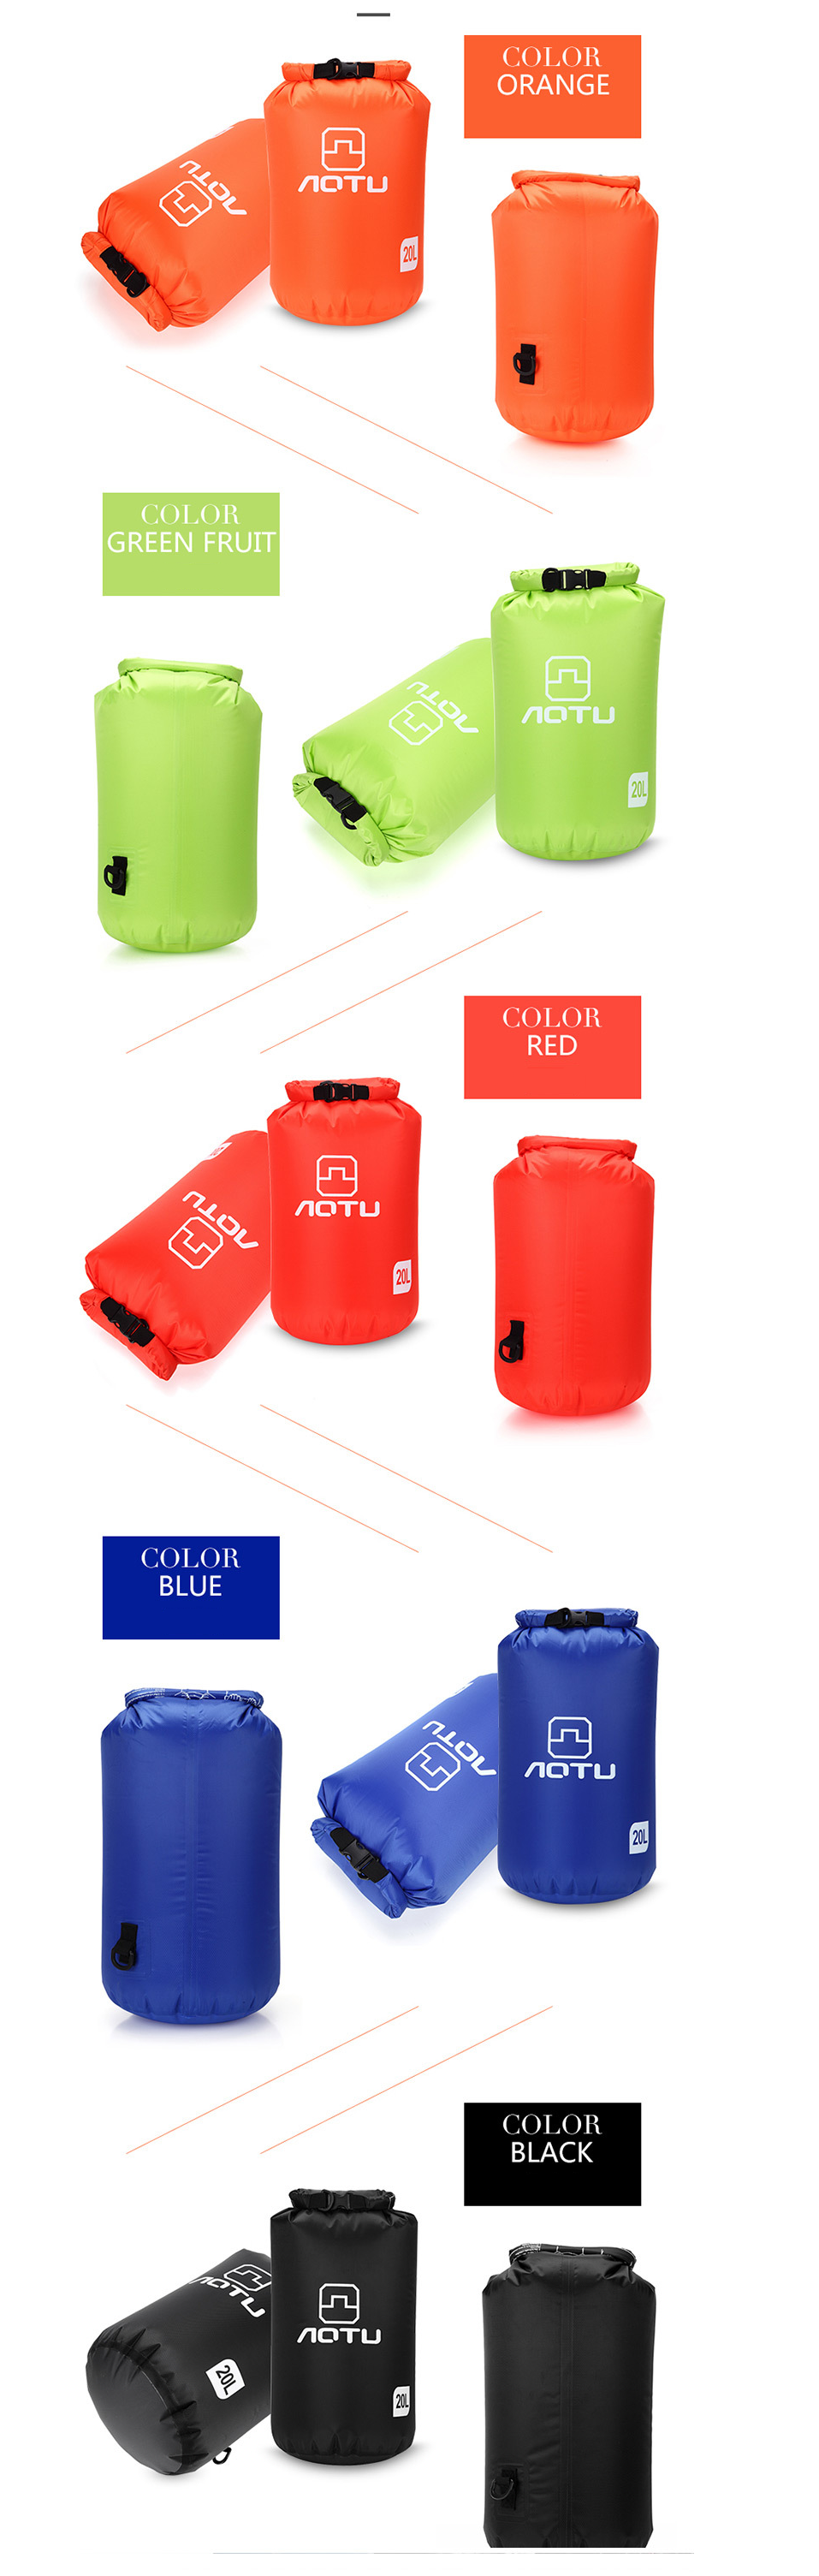 Túi chống nước, túi đựng đồ chuyên dụng cho các hoạt động thể thao dưới nước, đi biển, Balo chống nước 10L - 20L [có ảnh và video